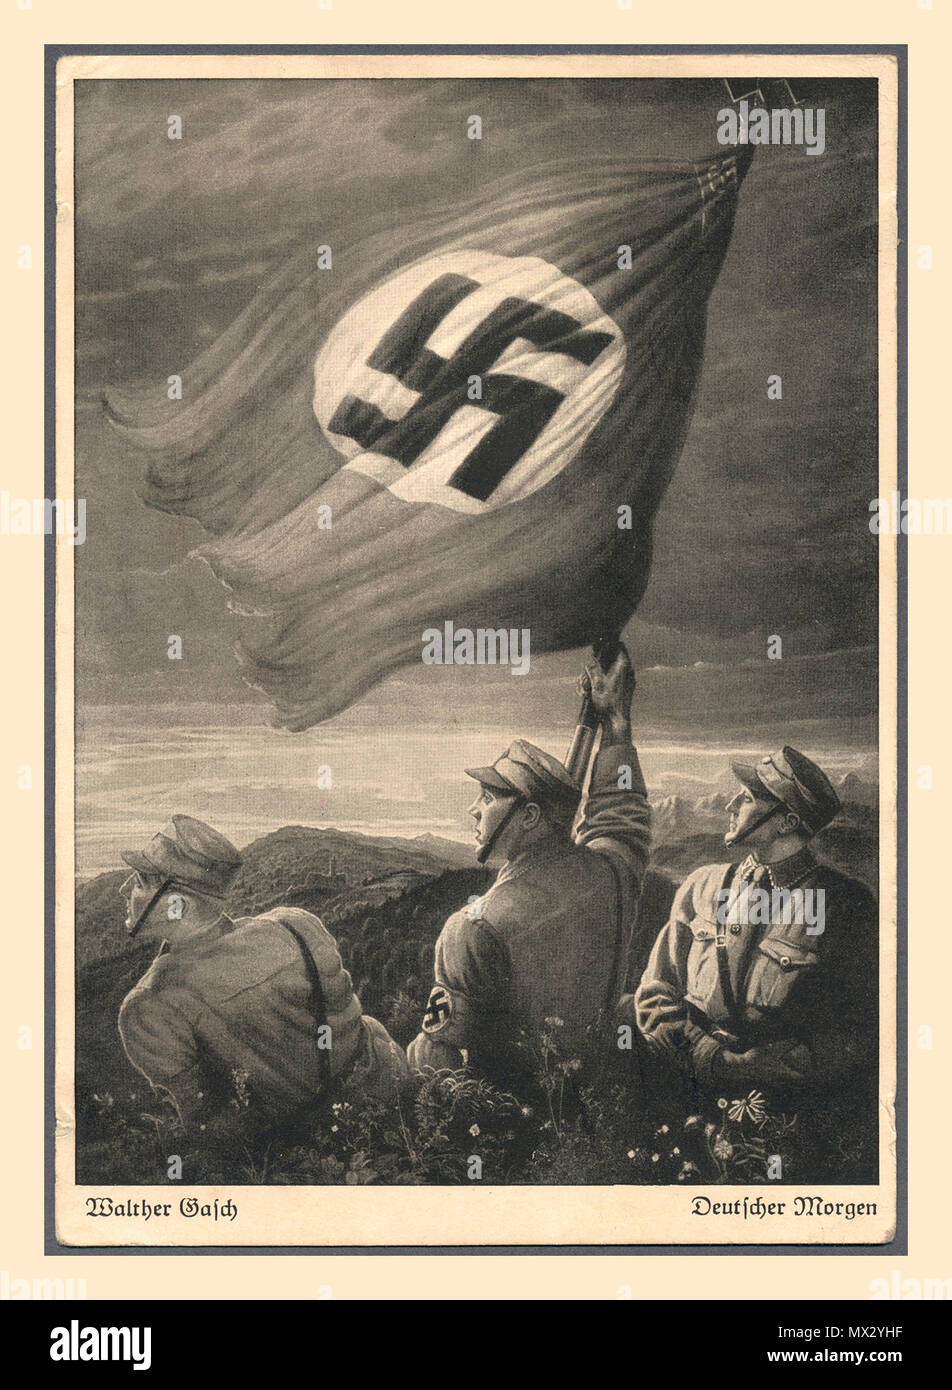 1930 Nazideutschland Propaganda Postkarte 1933. "Deutsche morgen "Drei SA-Männer in Uniform mit Hakenkreuz Armbinden mit einem großen Hakenkreuz Flagge über einem deutschen Landschaft Sonnenaufgang Stockfoto